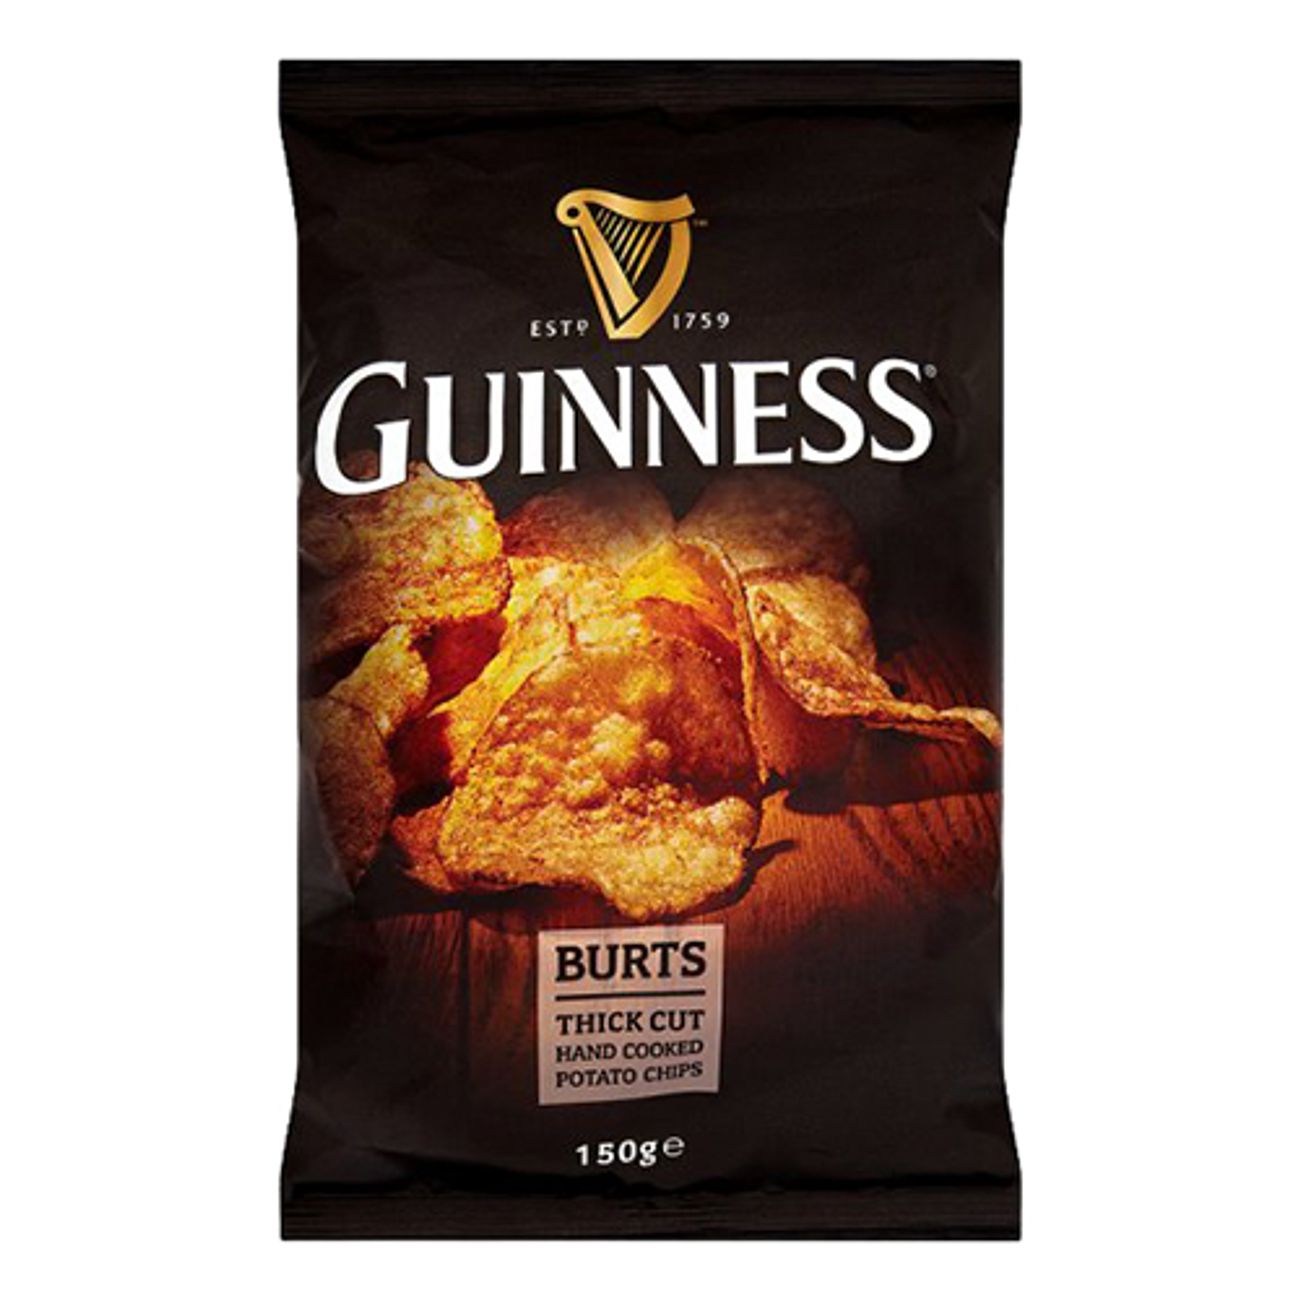 guinness-burts-potato-chips-1